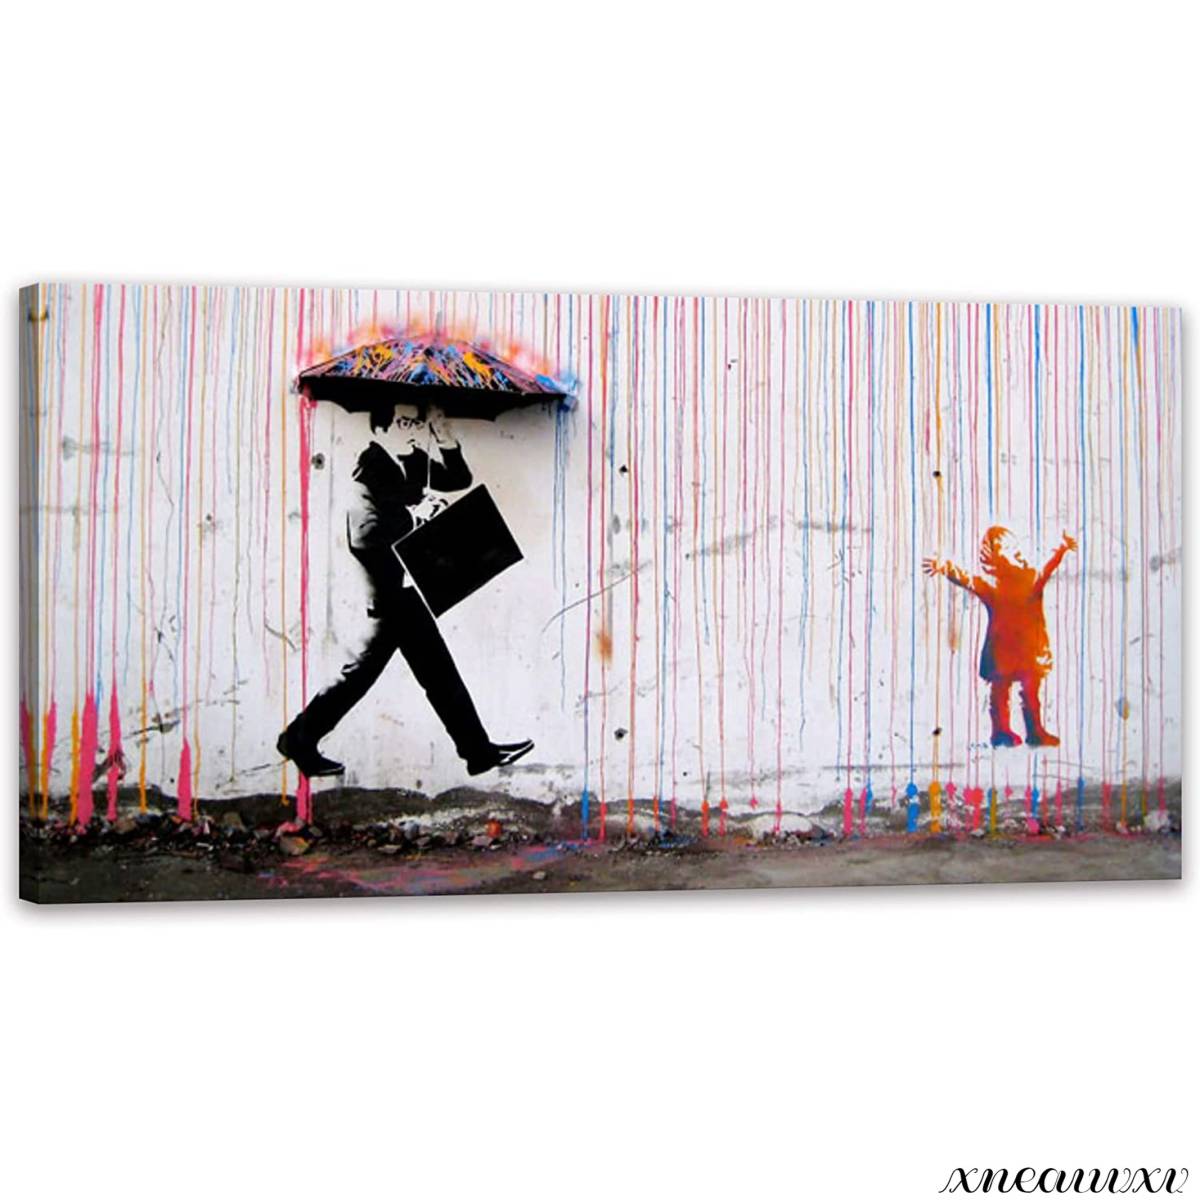 Banksy Gran Panel de Arte Lluvia Paraguas Hombre Reproducción Interior Decoración de la Habitación Decoración Lienzo Pintura Colgante de Pared Simple Abstracto Contemporáneo Moderno, Cuadro, Pintura al óleo, Naturaleza, Pintura de paisaje